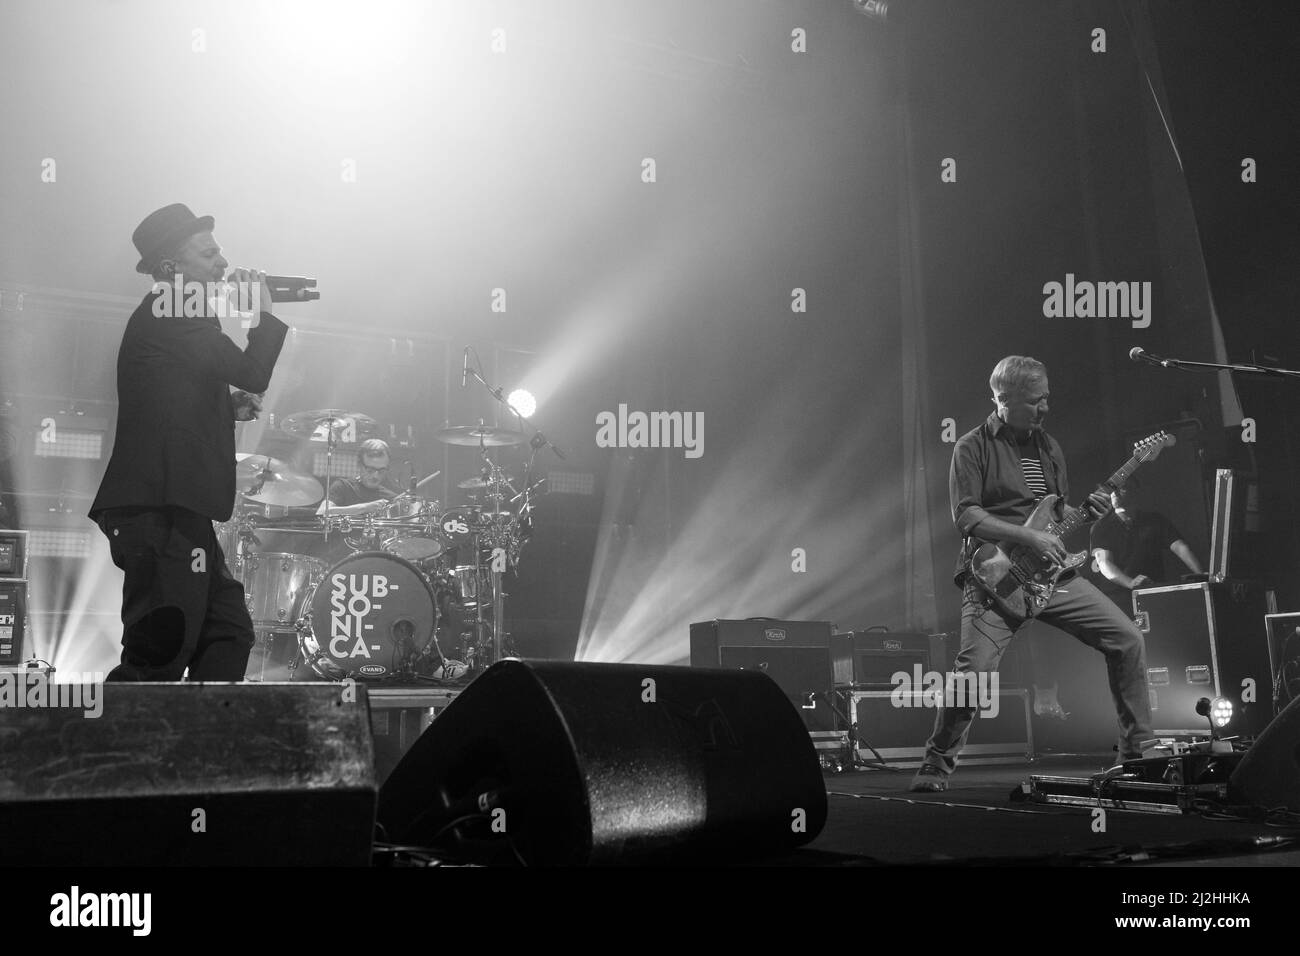 La band italiana Subsonica ha suonato dal vivo il primo concerto del tour Microchip temporaneo di Torino dopo le covide restrizioni Foto Stock